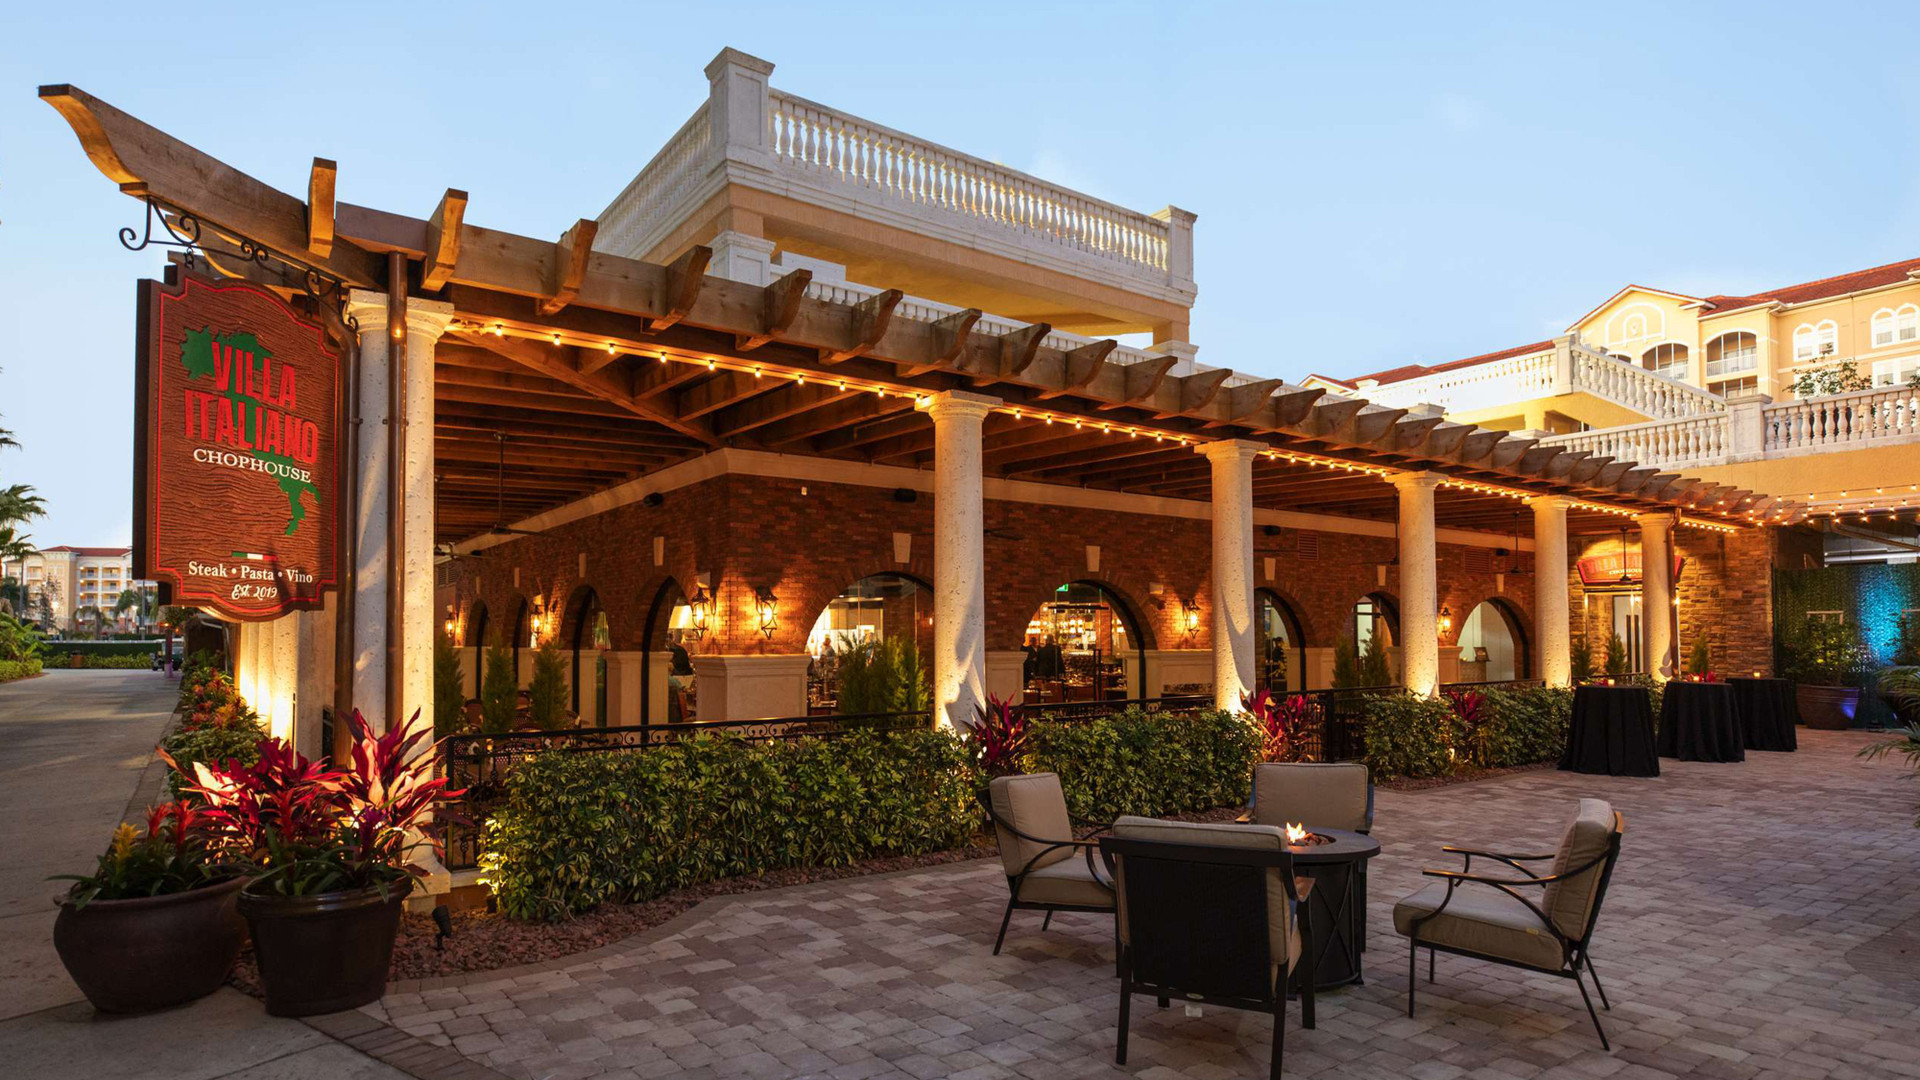 Villa Italiano Chophouse |Westgate Vacation Villas Resort & Westgate Town Center Resort